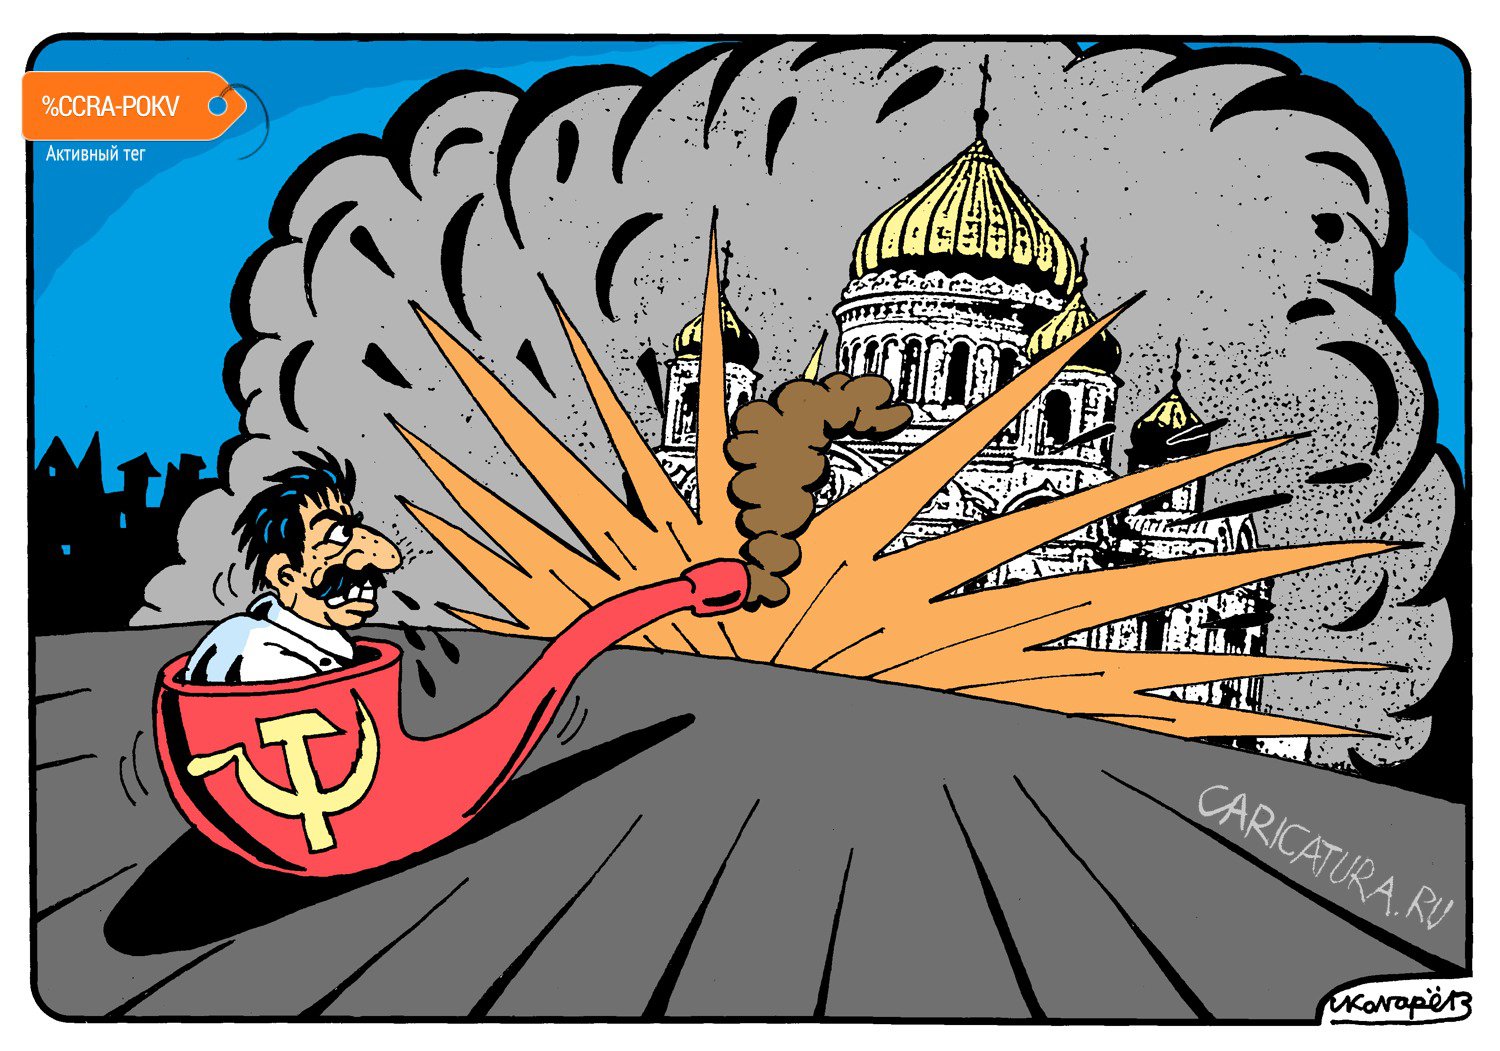 Карикатура "Сталин и Церковь", Игорь Колгарев